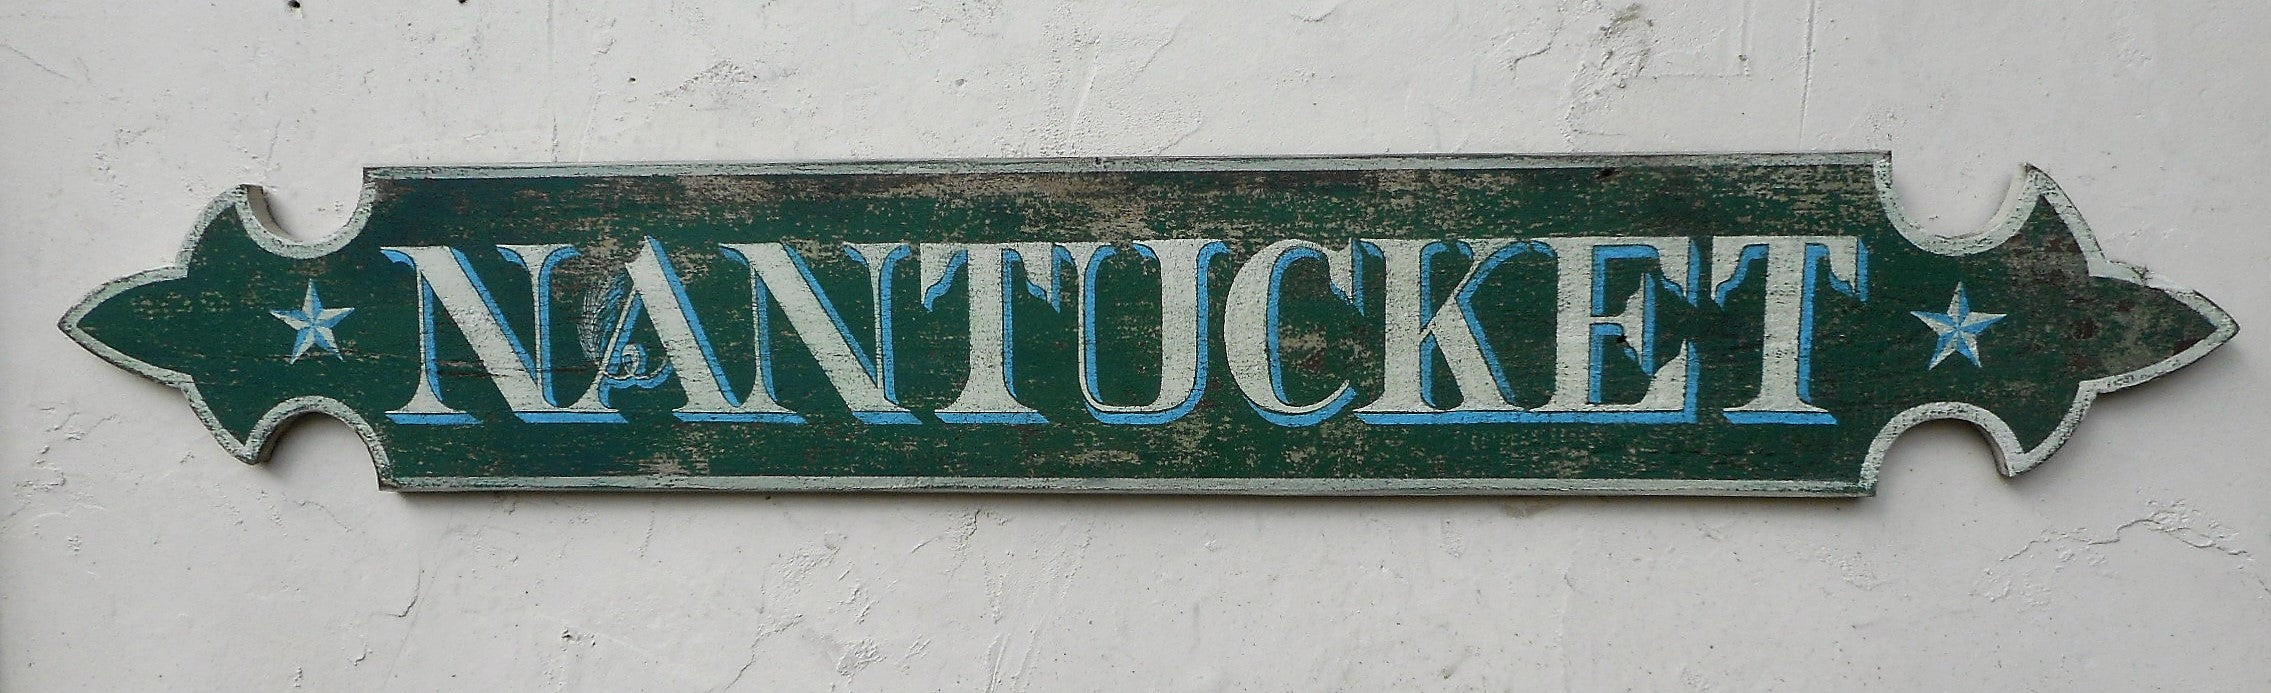 Nantucket Quarterboard